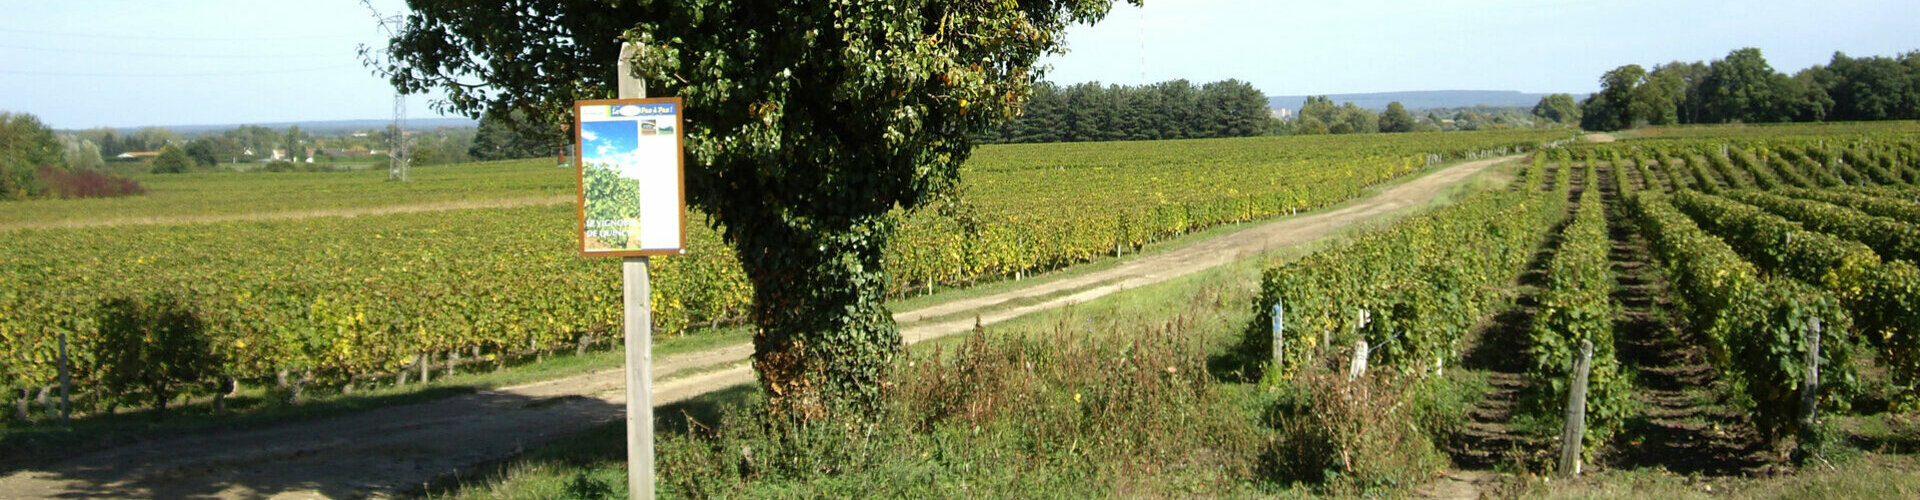 Les Vignobles et vins de Quincy et Reuilly